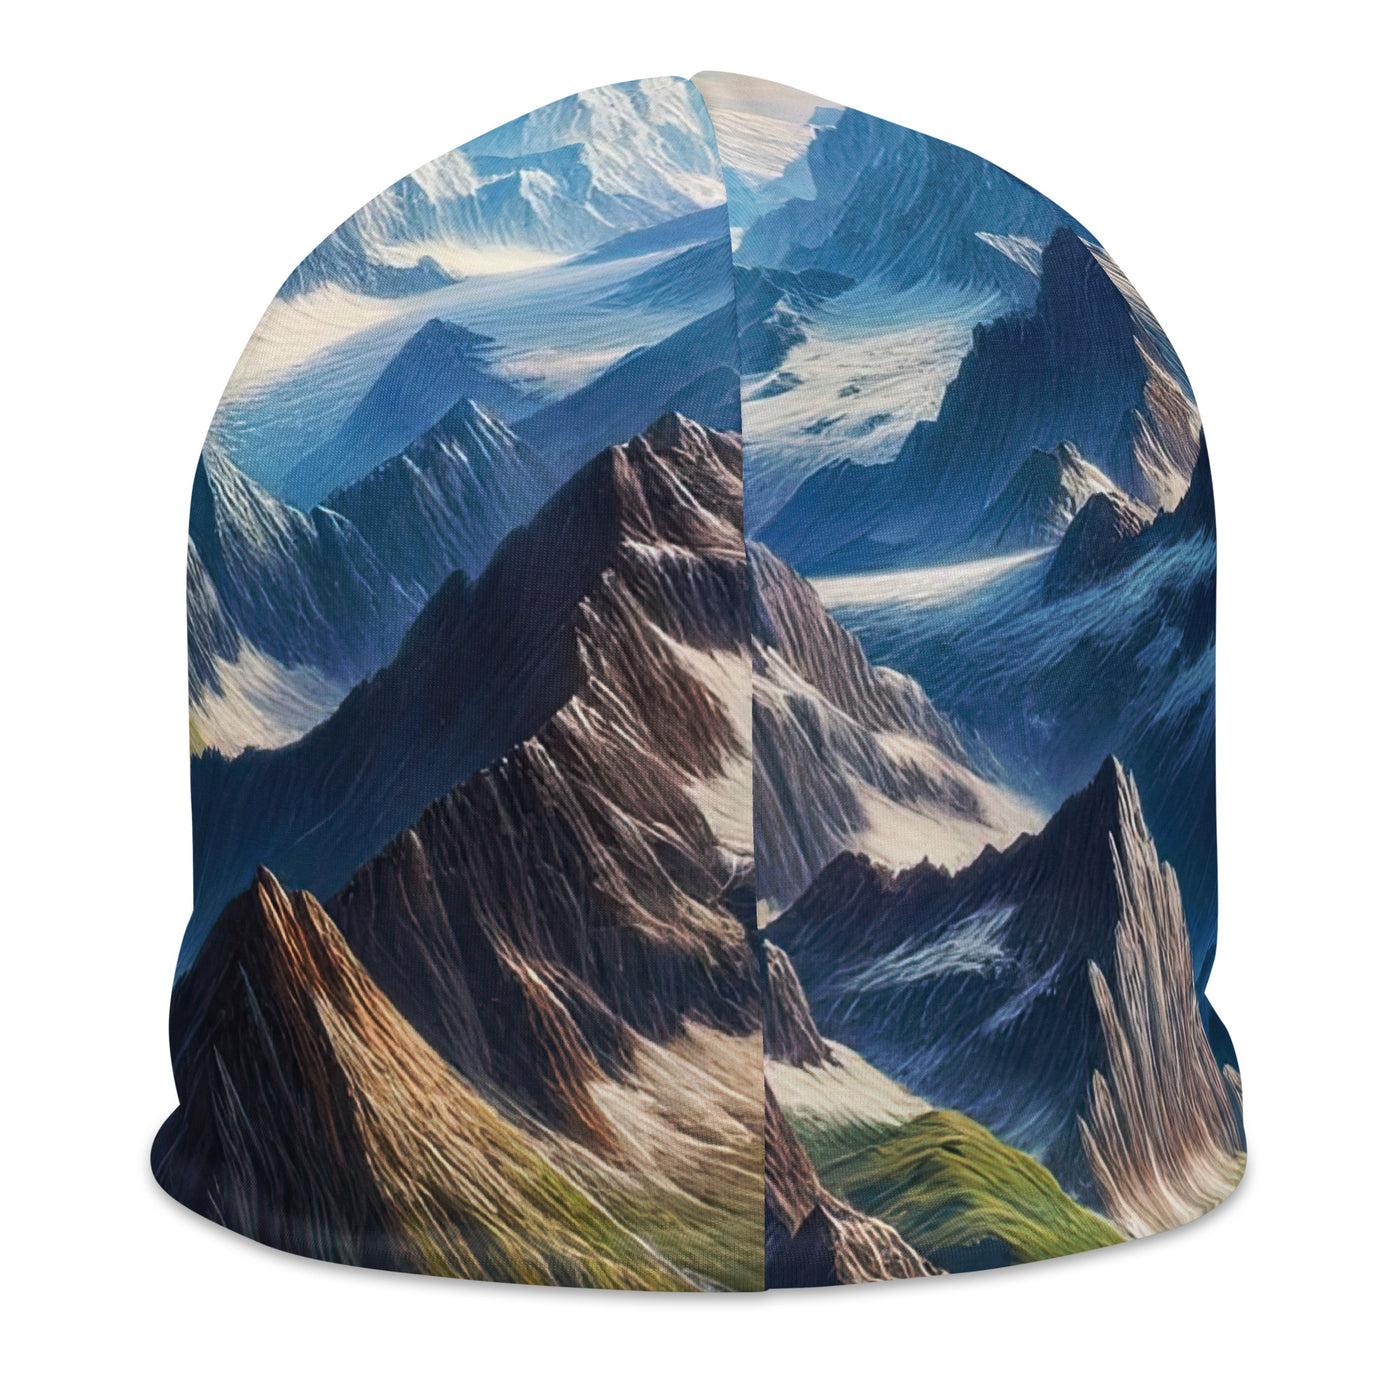 Panorama-Ölgemälde der Alpen mit schneebedeckten Gipfeln und schlängelnden Flusstälern - Beanie (All-Over Print) berge xxx yyy zzz